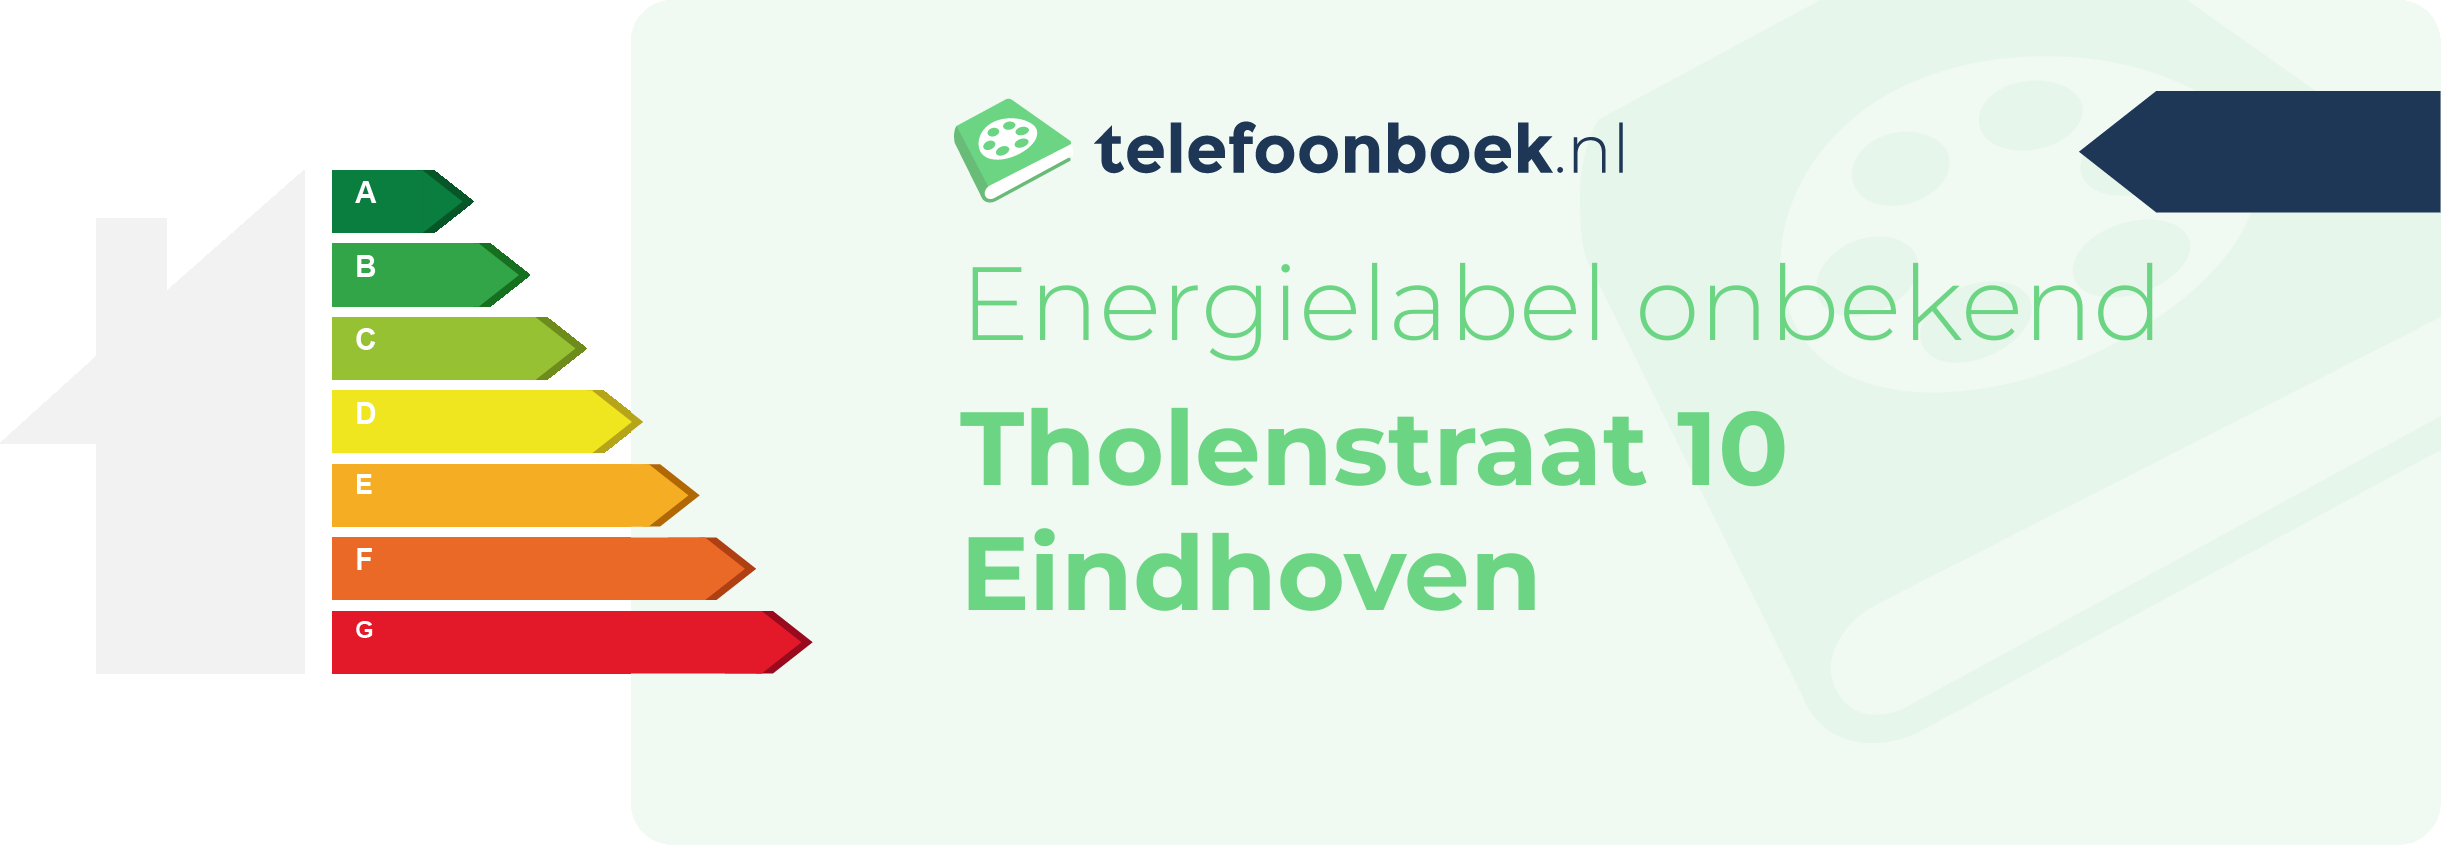 Energielabel Tholenstraat 10 Eindhoven